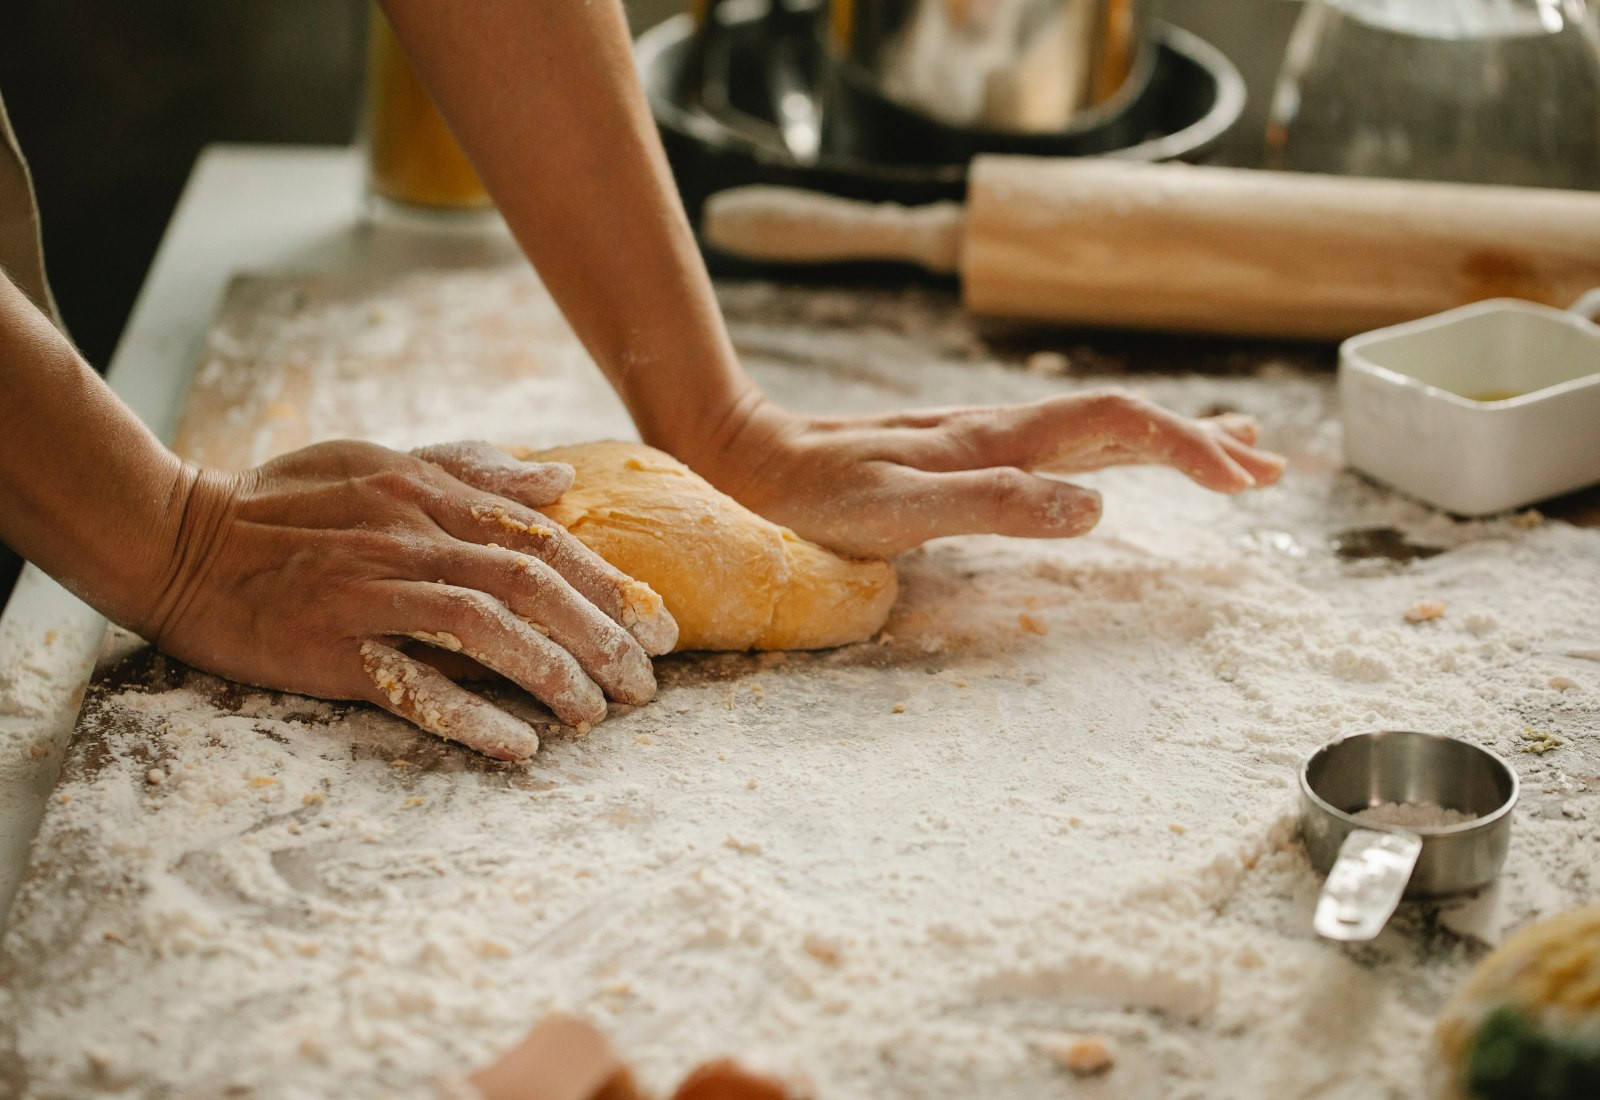 Nguyên liệu làm bánh mì khá đa dạng nhưng thành phần chính vẫn là bột mì và men nở